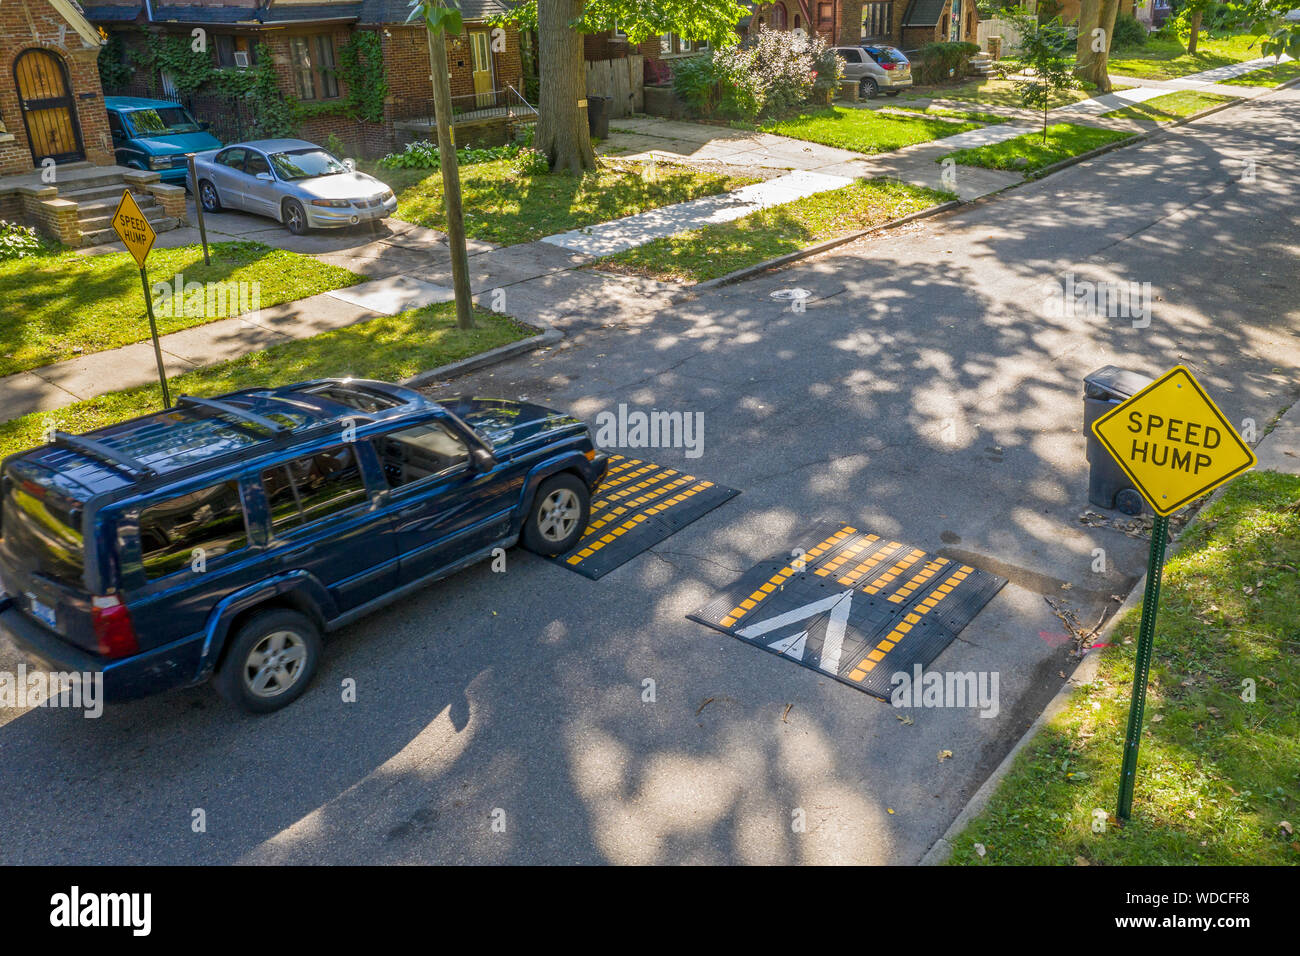 Detroit, Michigan - Una vettura attraversa un 'speed gobba" in un quartiere residenziale. La città ha iniziato l'installazione di tali dispositivi su strade dove accelerando Foto Stock